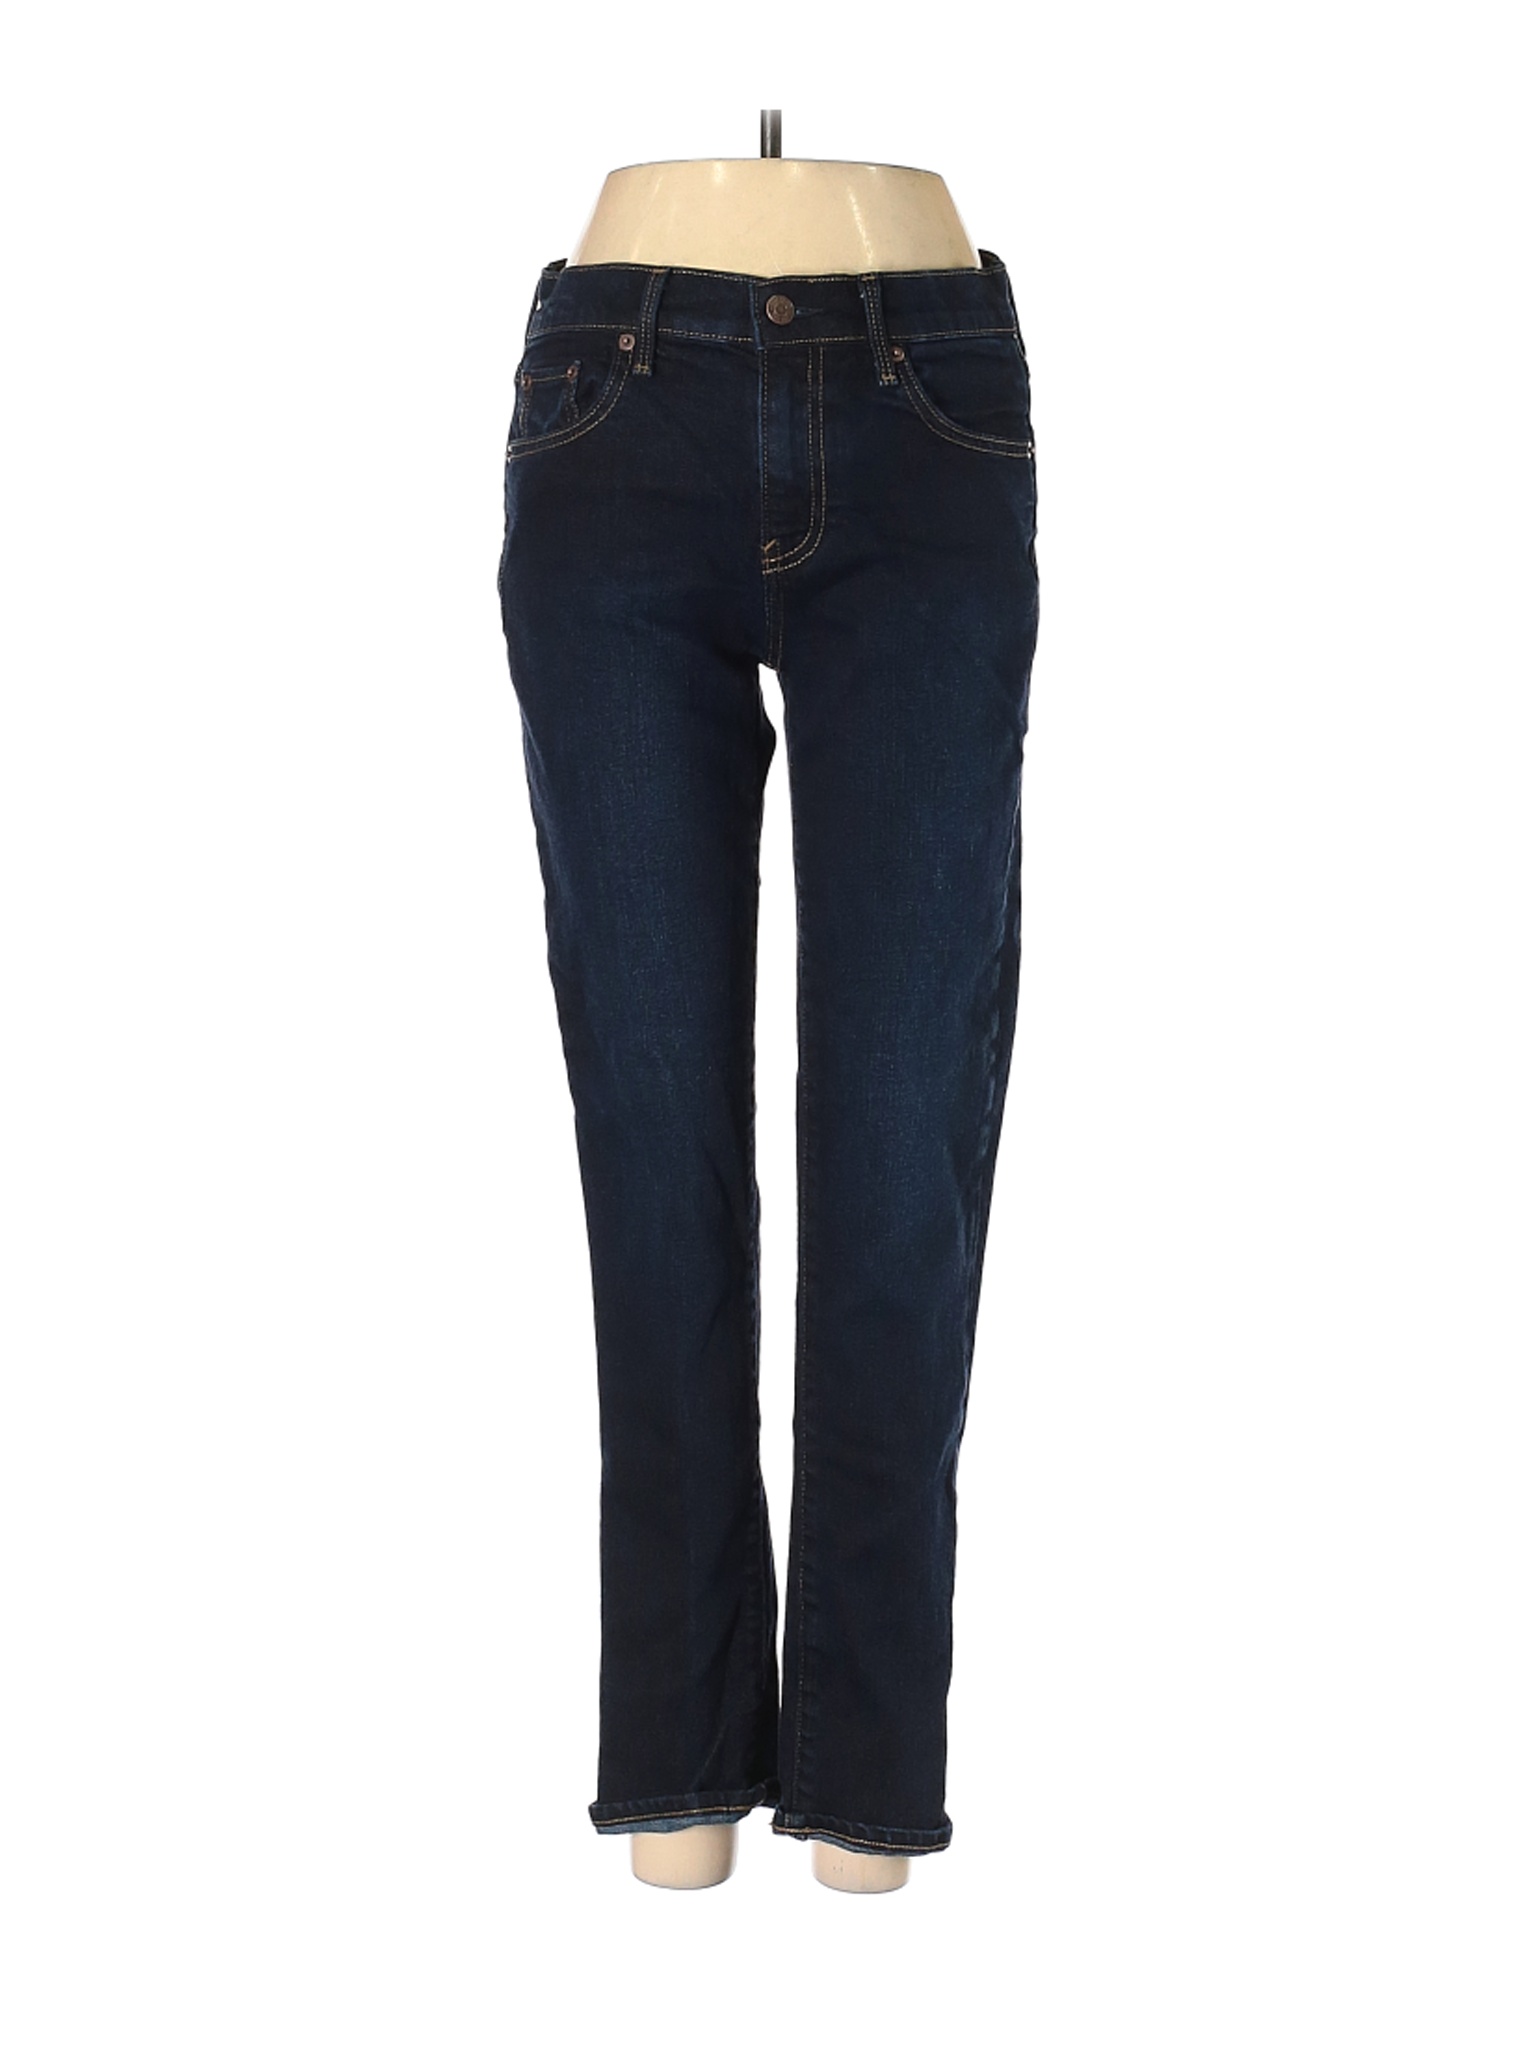 Gap Women Blue Jeans 26W | eBay